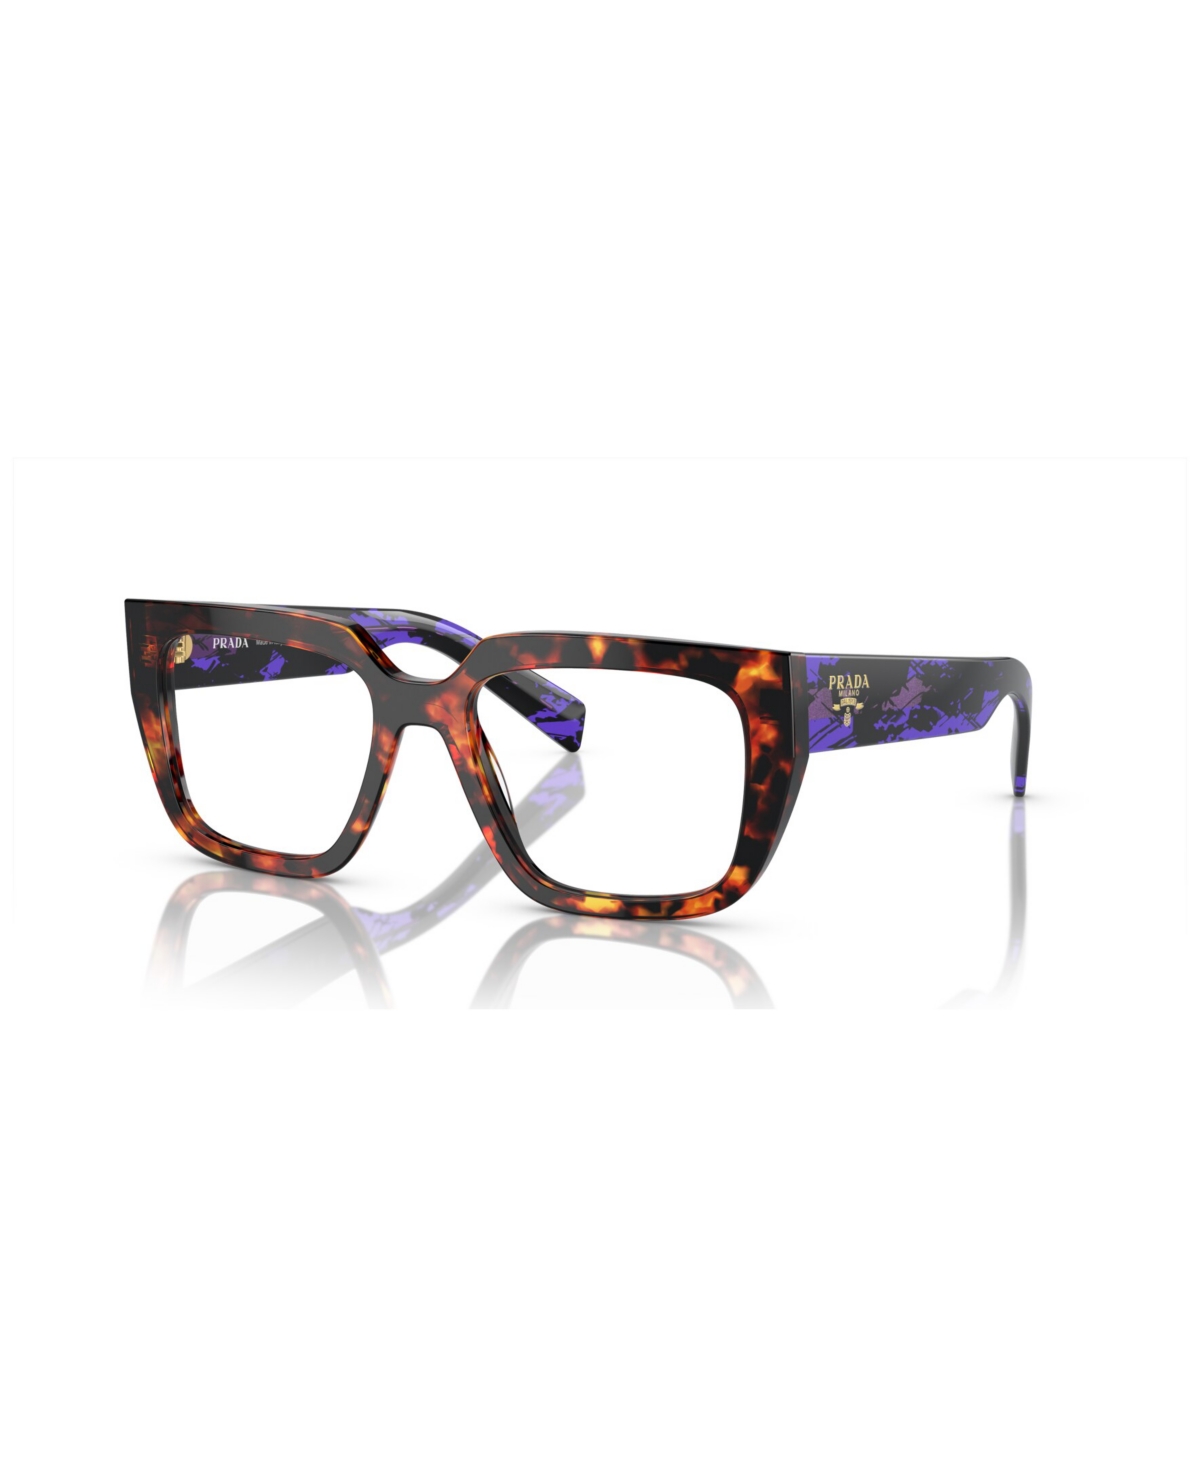 Women's Eyeglasses, Pr A03V - Black